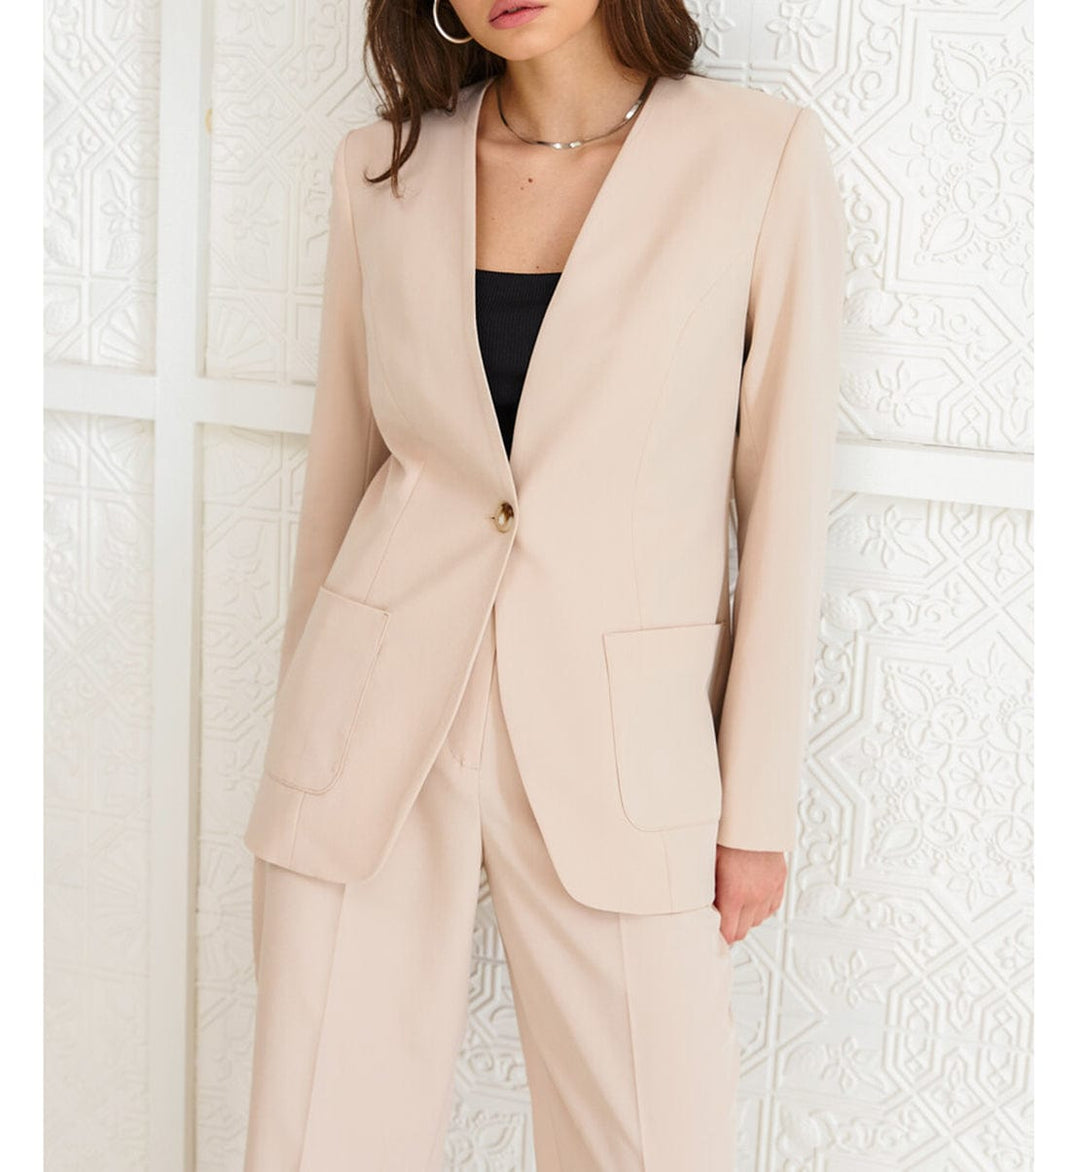 solovedress Fashion 2 Pieces V Neck Women Suit (Blazer+Pants）